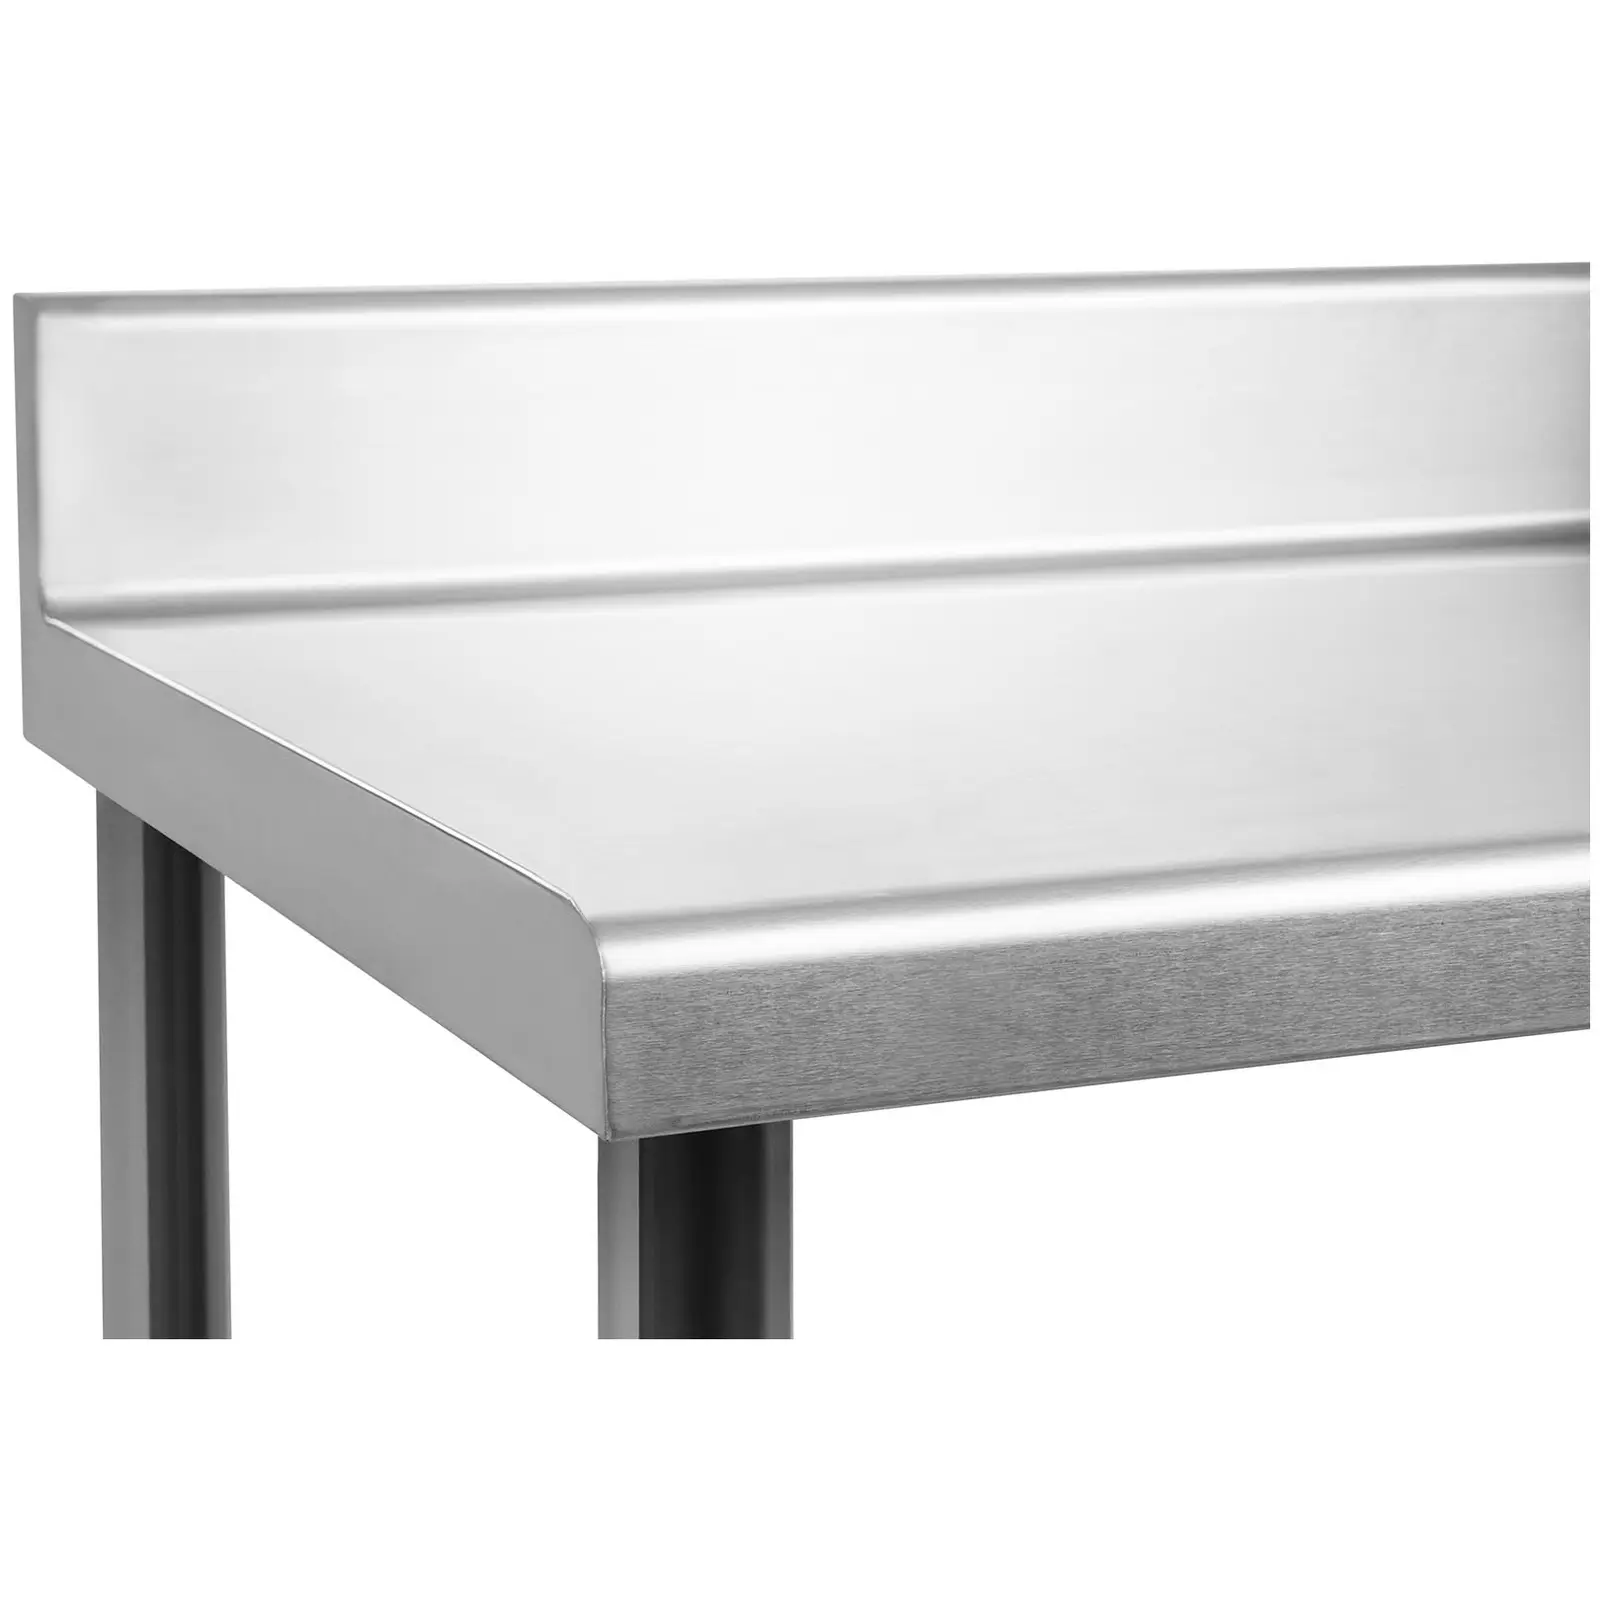 RST työpöytä - 150 x 60 cm - roiskelevy - 159 kg kantavuus